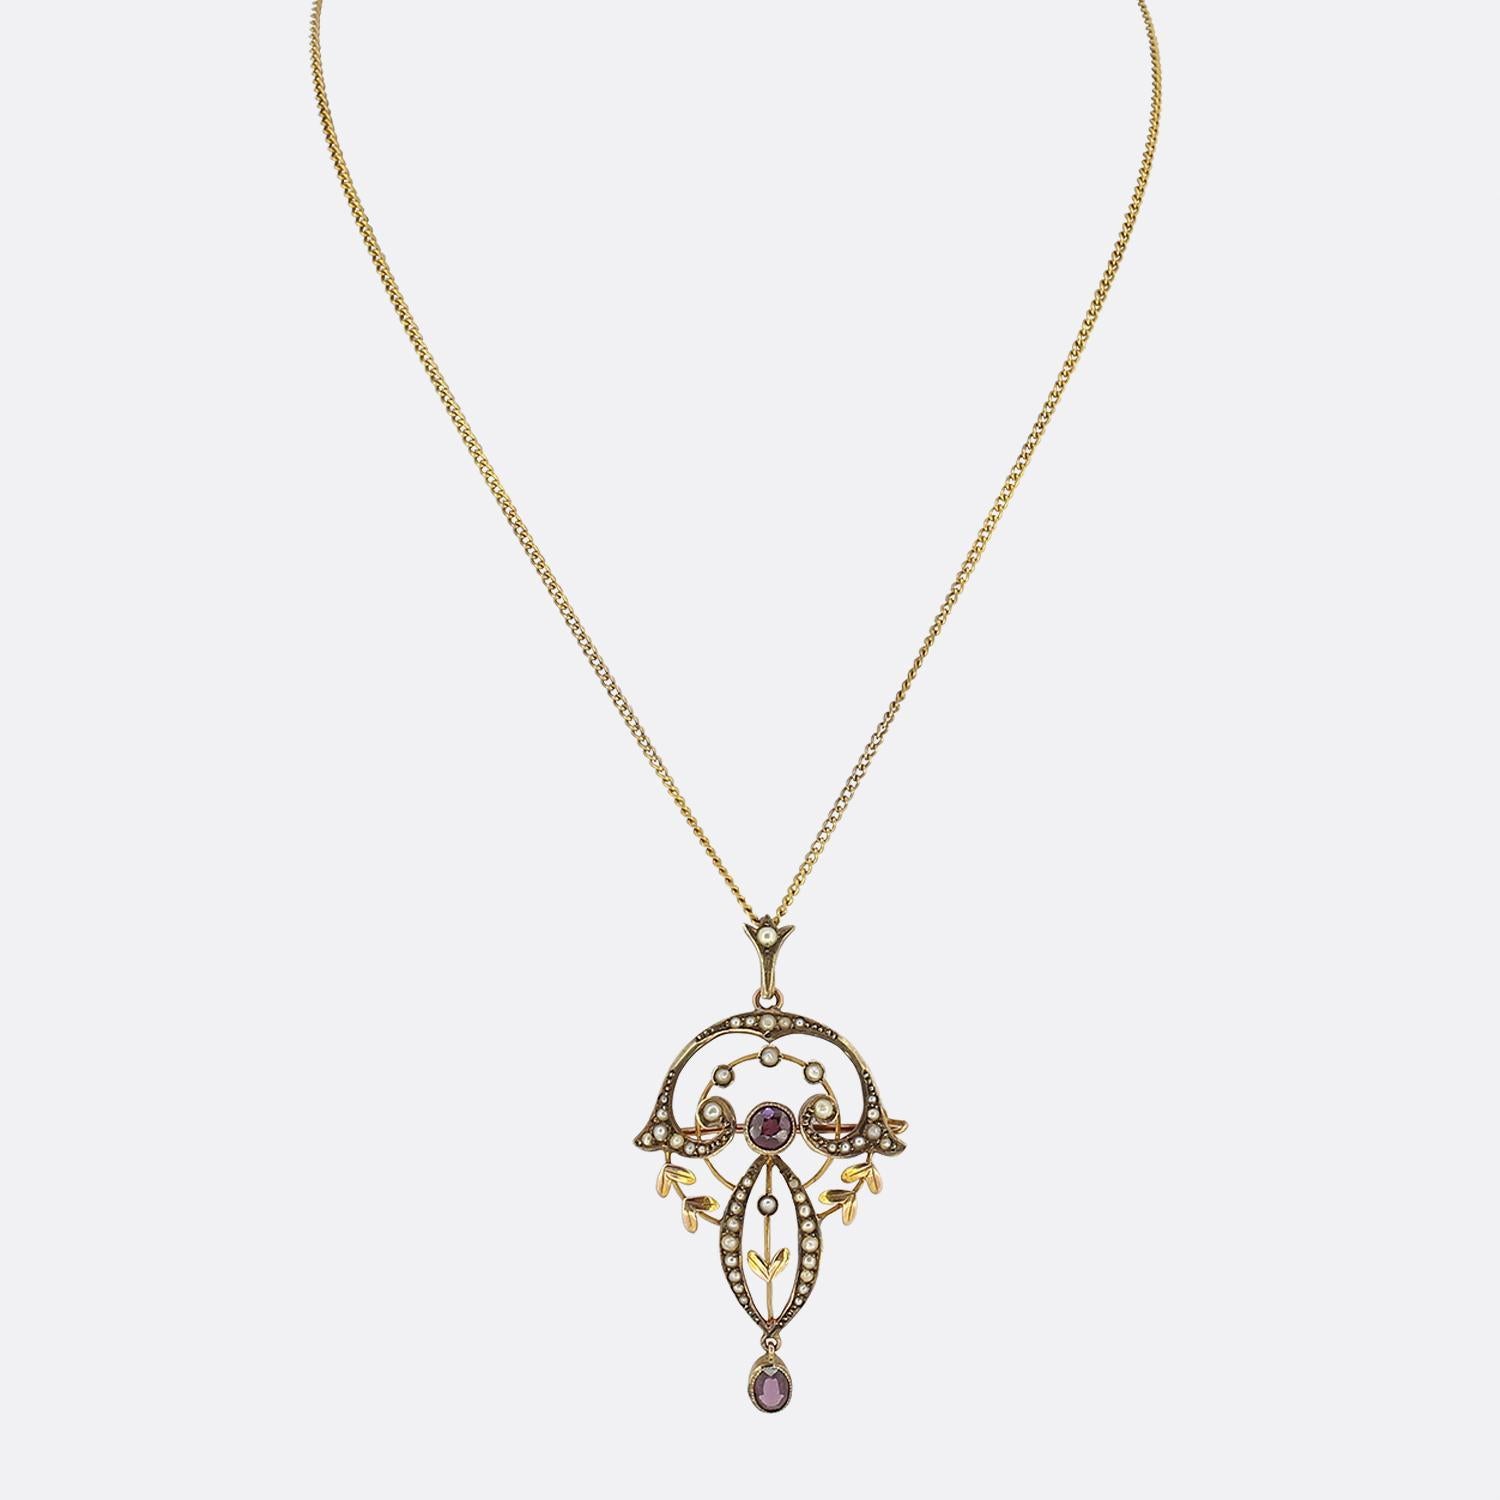 Il s'agit d'un collier antique à pendentifs en grenat et perles de l'Arte Antiques. Elle est sertie d'un grenat central entouré de multiples perles de rocaille et d'une goutte de grenat de taille ovale dans une monture en or jaune 9ct. Le collier